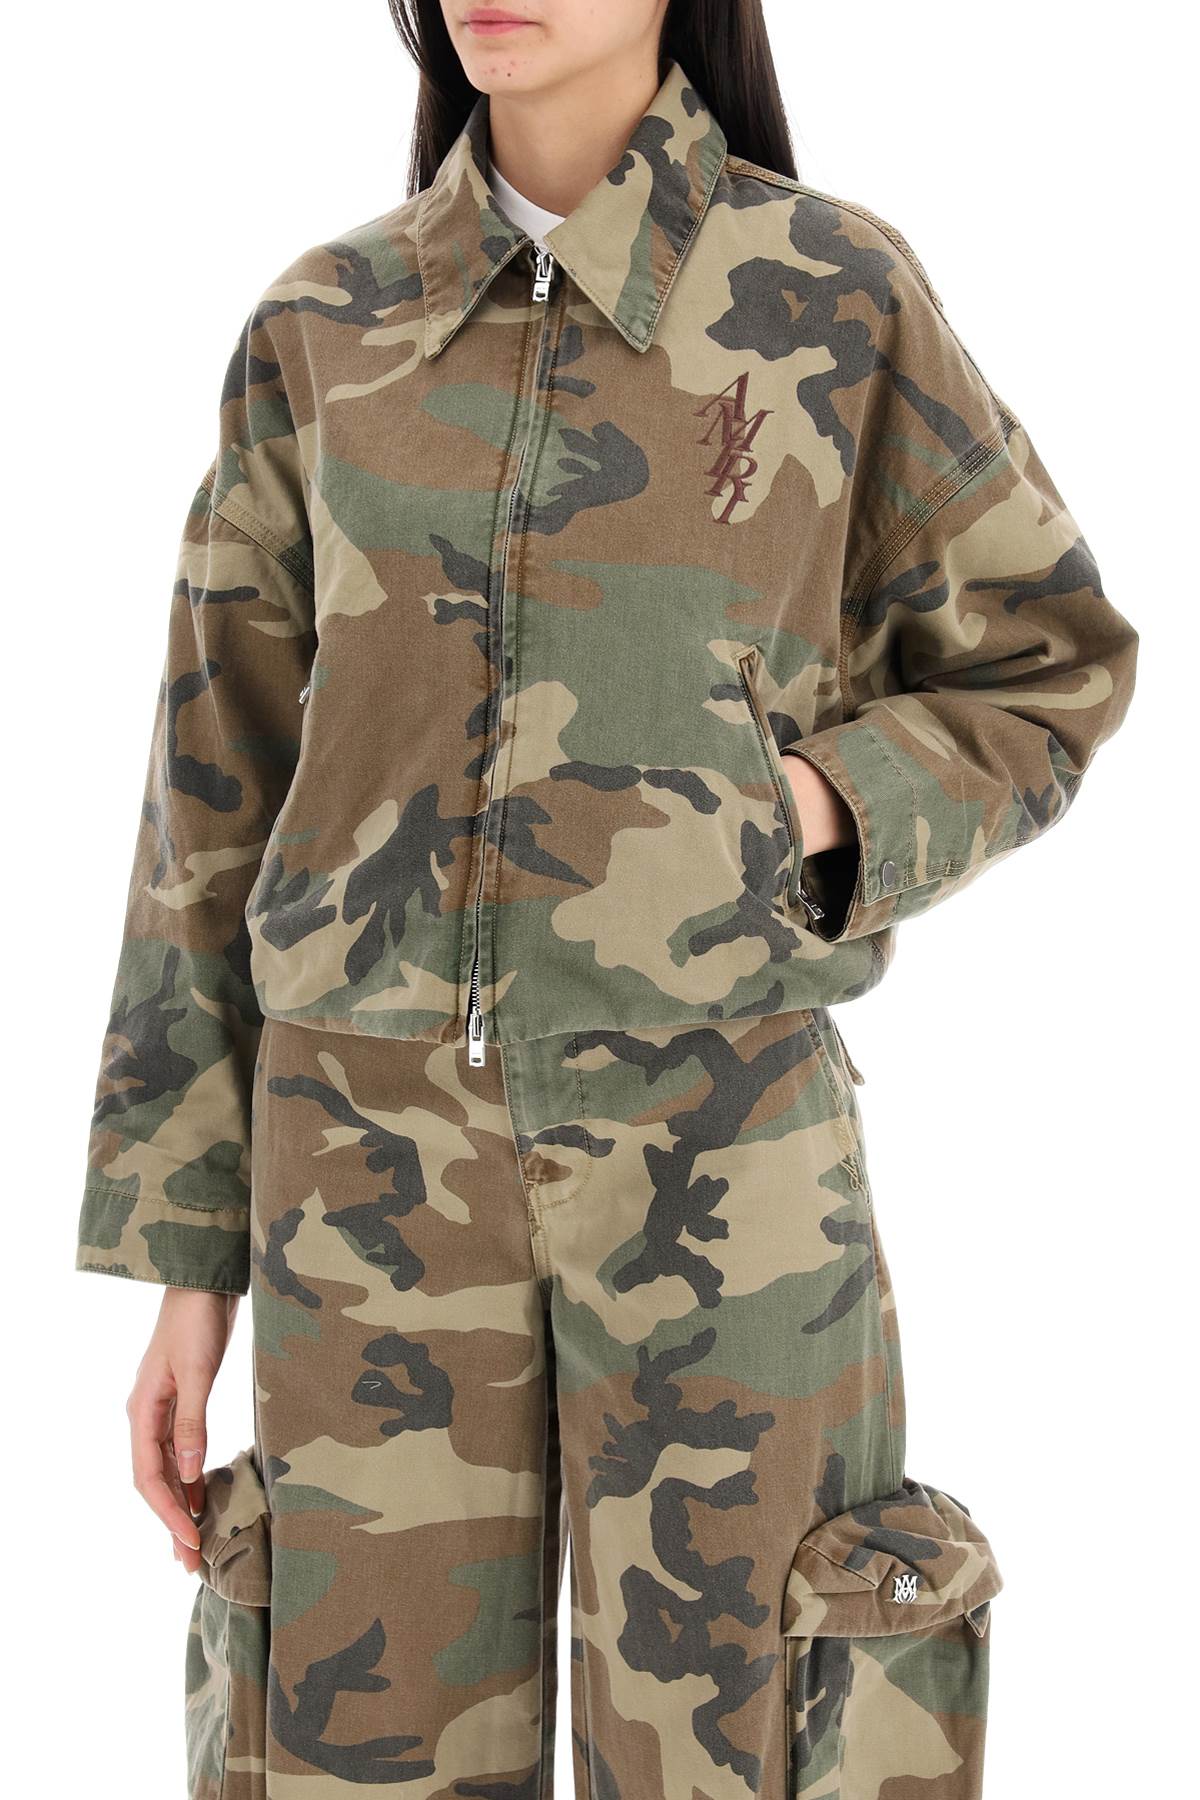 Amiri Amiri "workwear style camouflage jacket